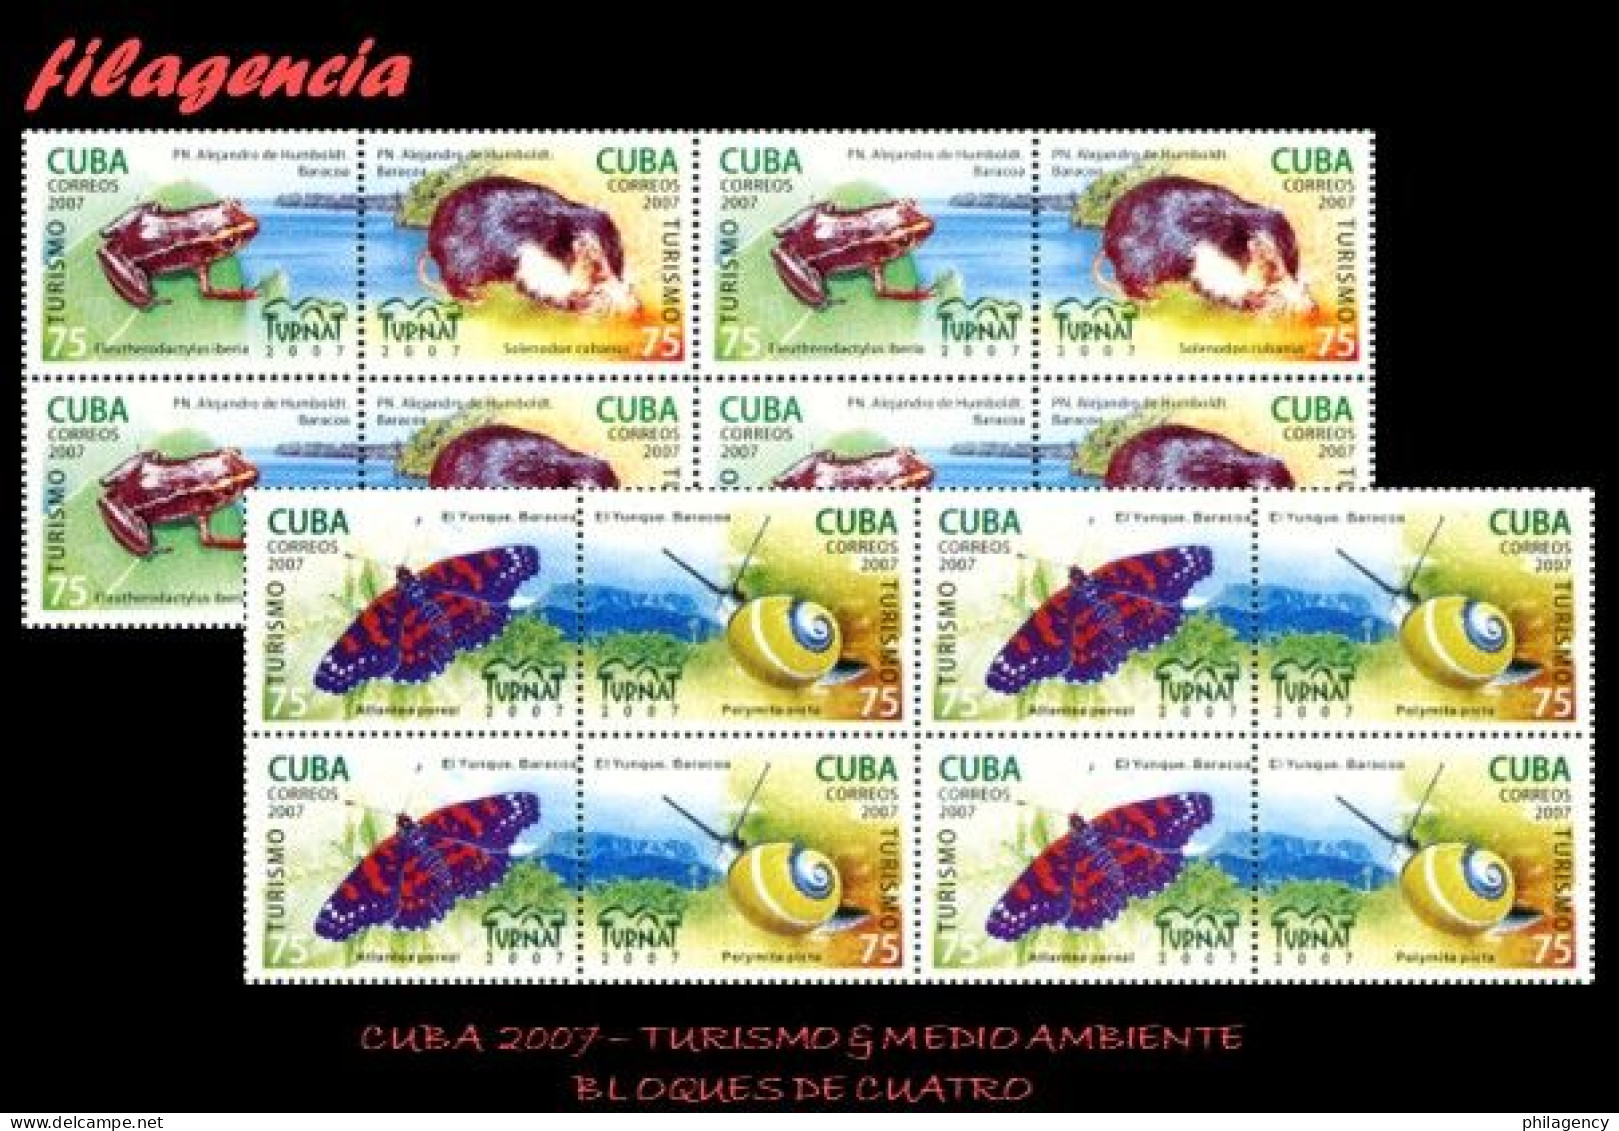 CUBA. BLOQUES DE CUATRO. 2007-30 FERIA INTERNACIONAL DEL TURISMO TURNAT. FAUNA ENDÉMICA. SET TENANTS - Ungebraucht